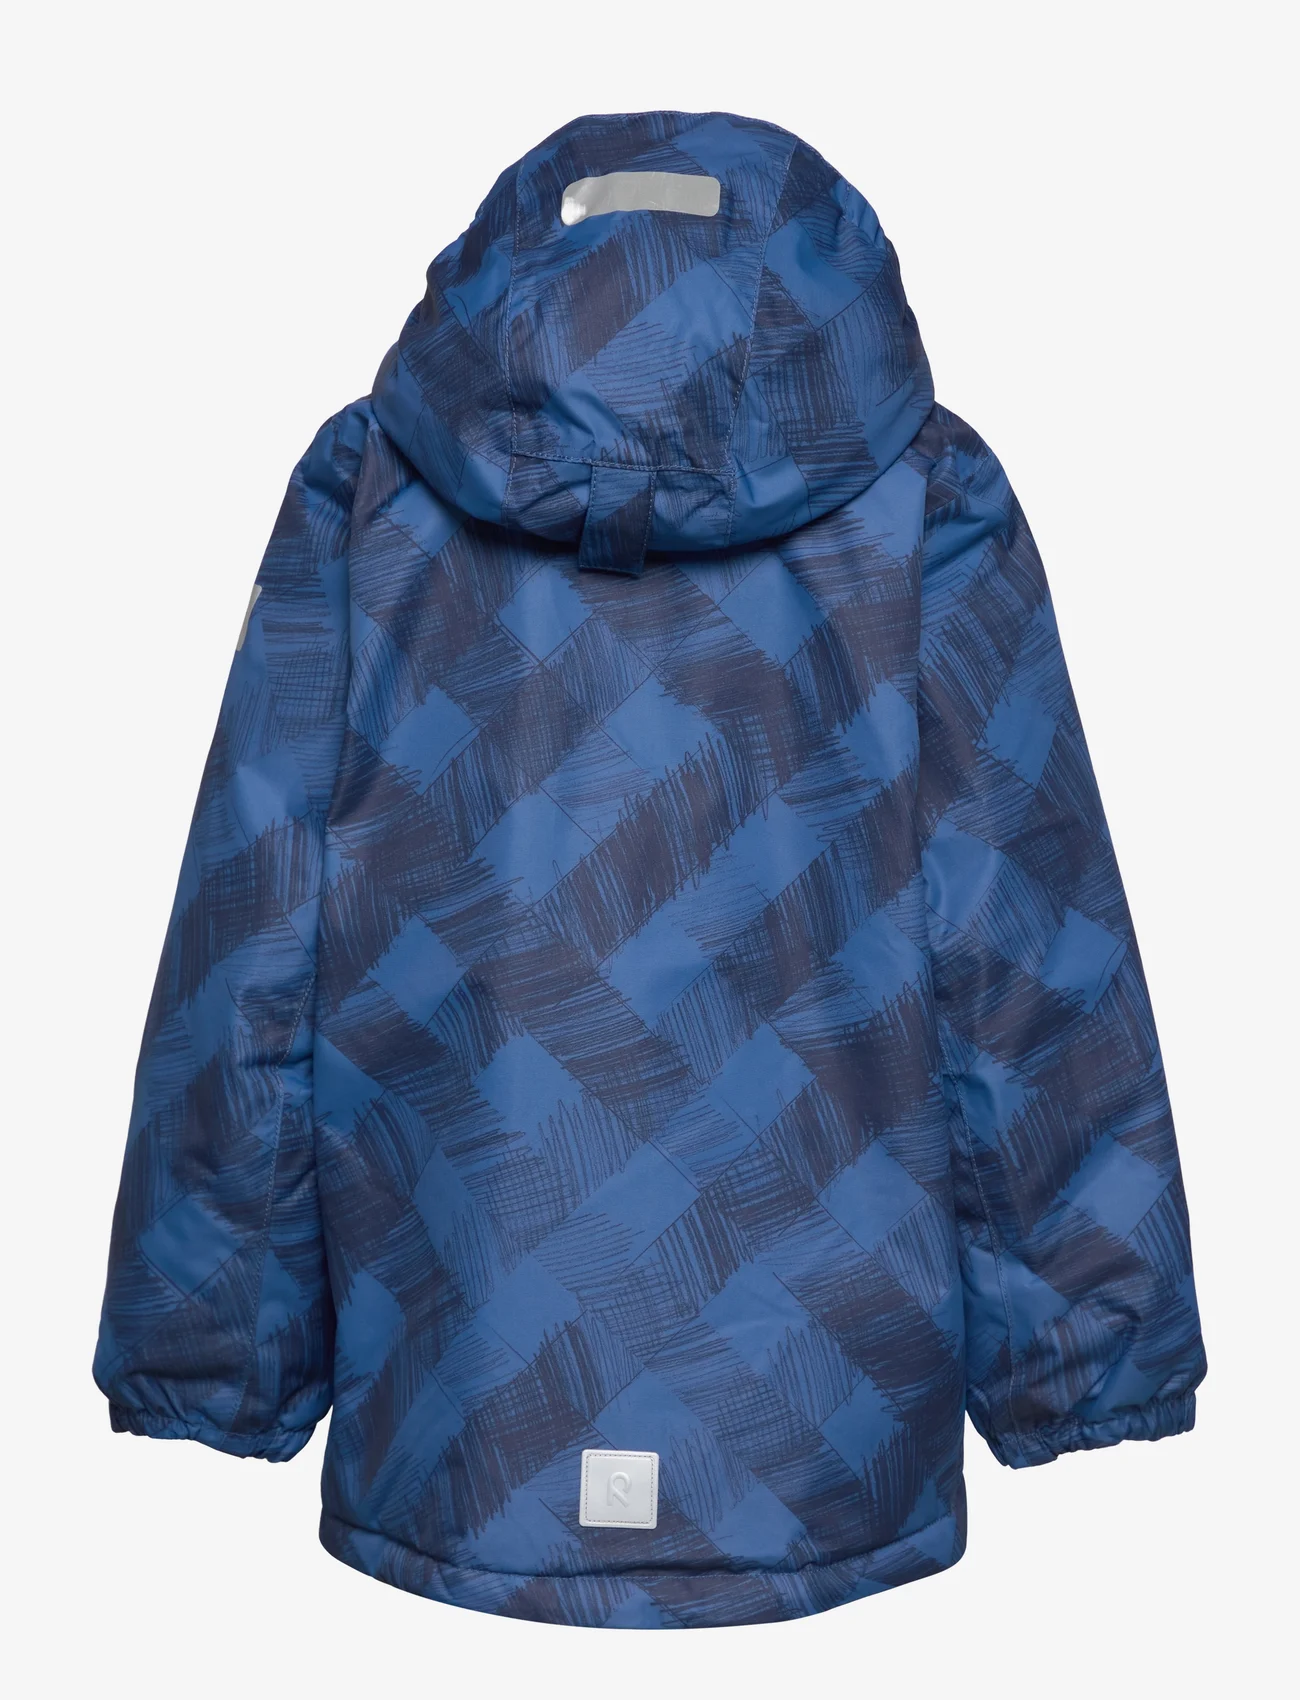 Reima - Winter jacket, Nuotio - ziemas jakas - soft navy - 1